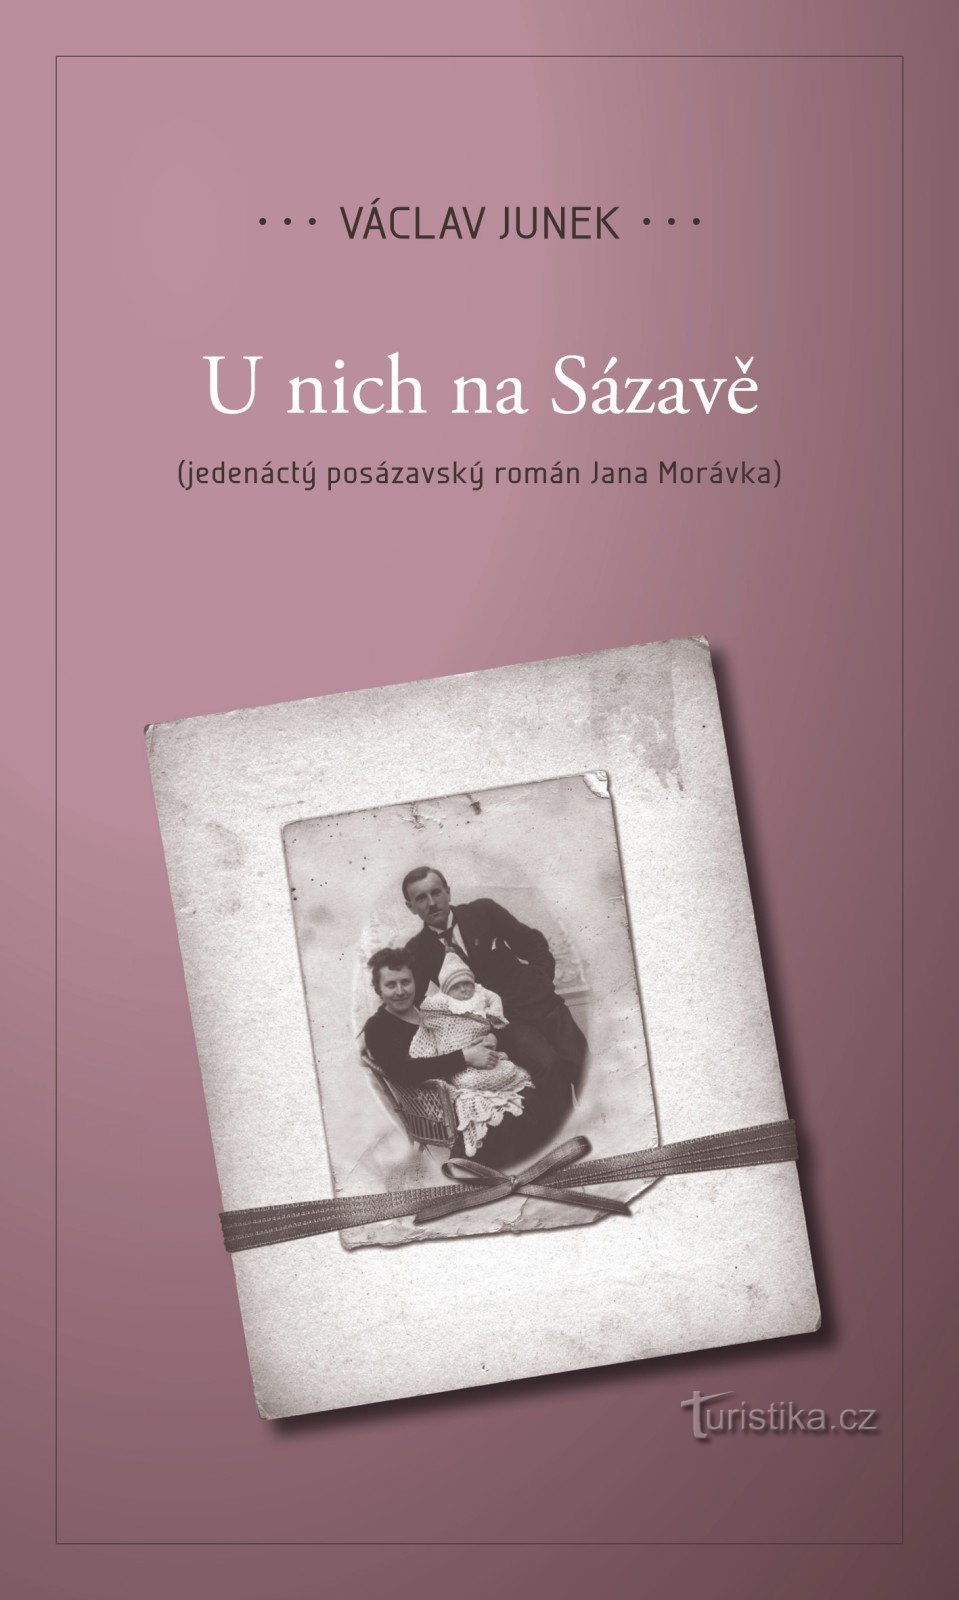 Vi vil præsentere den ellevte roman U nich Na Sázavá af Václav Junka